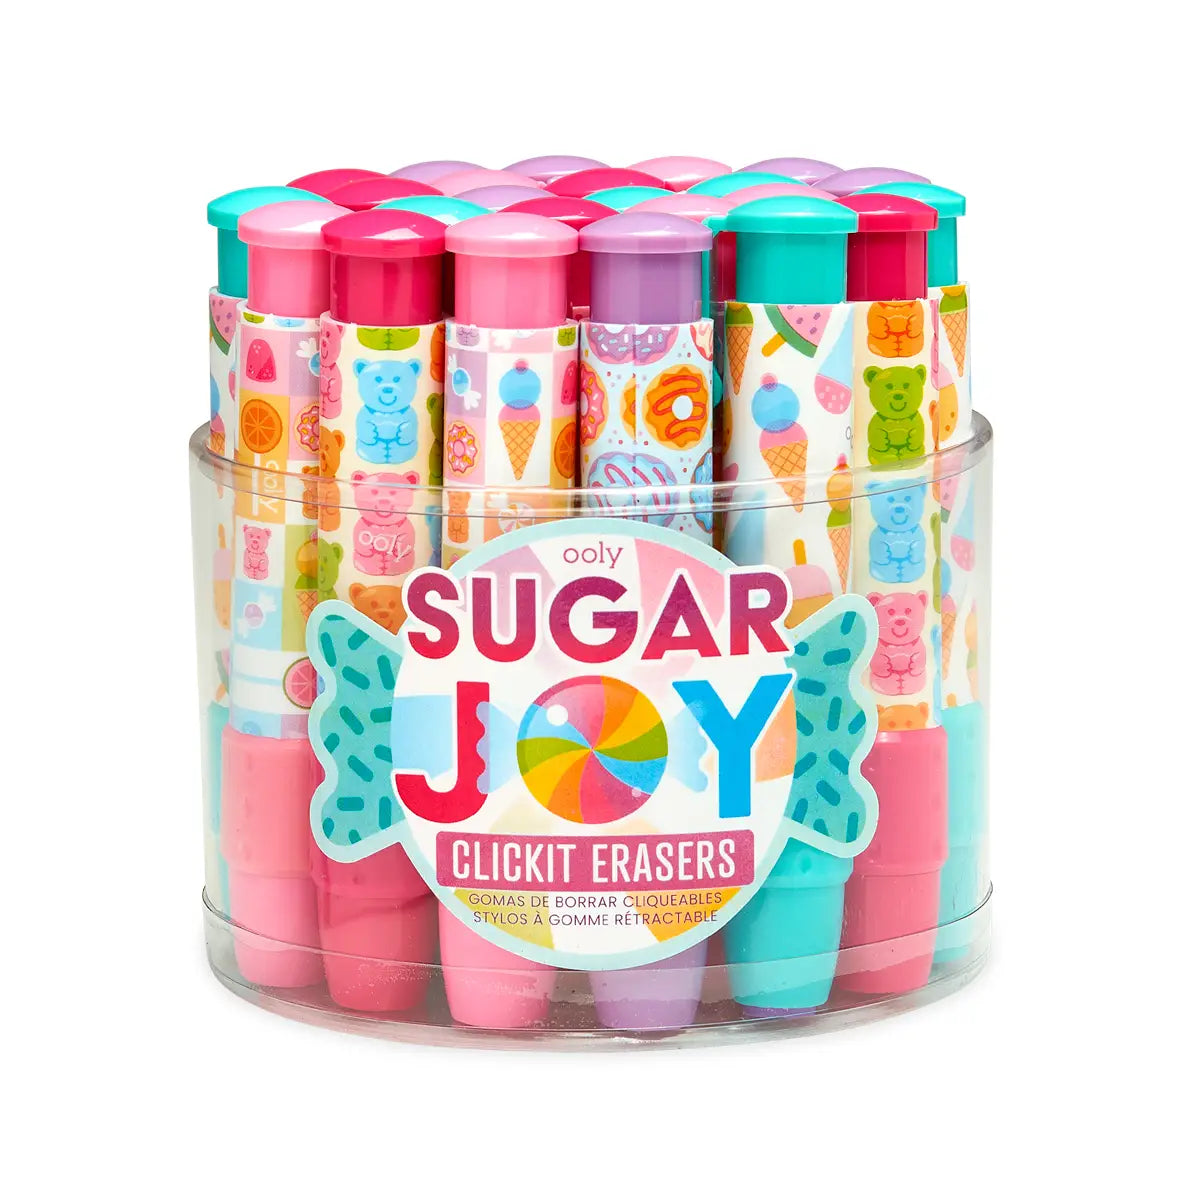 Click-It Eraser: Sugar Joy